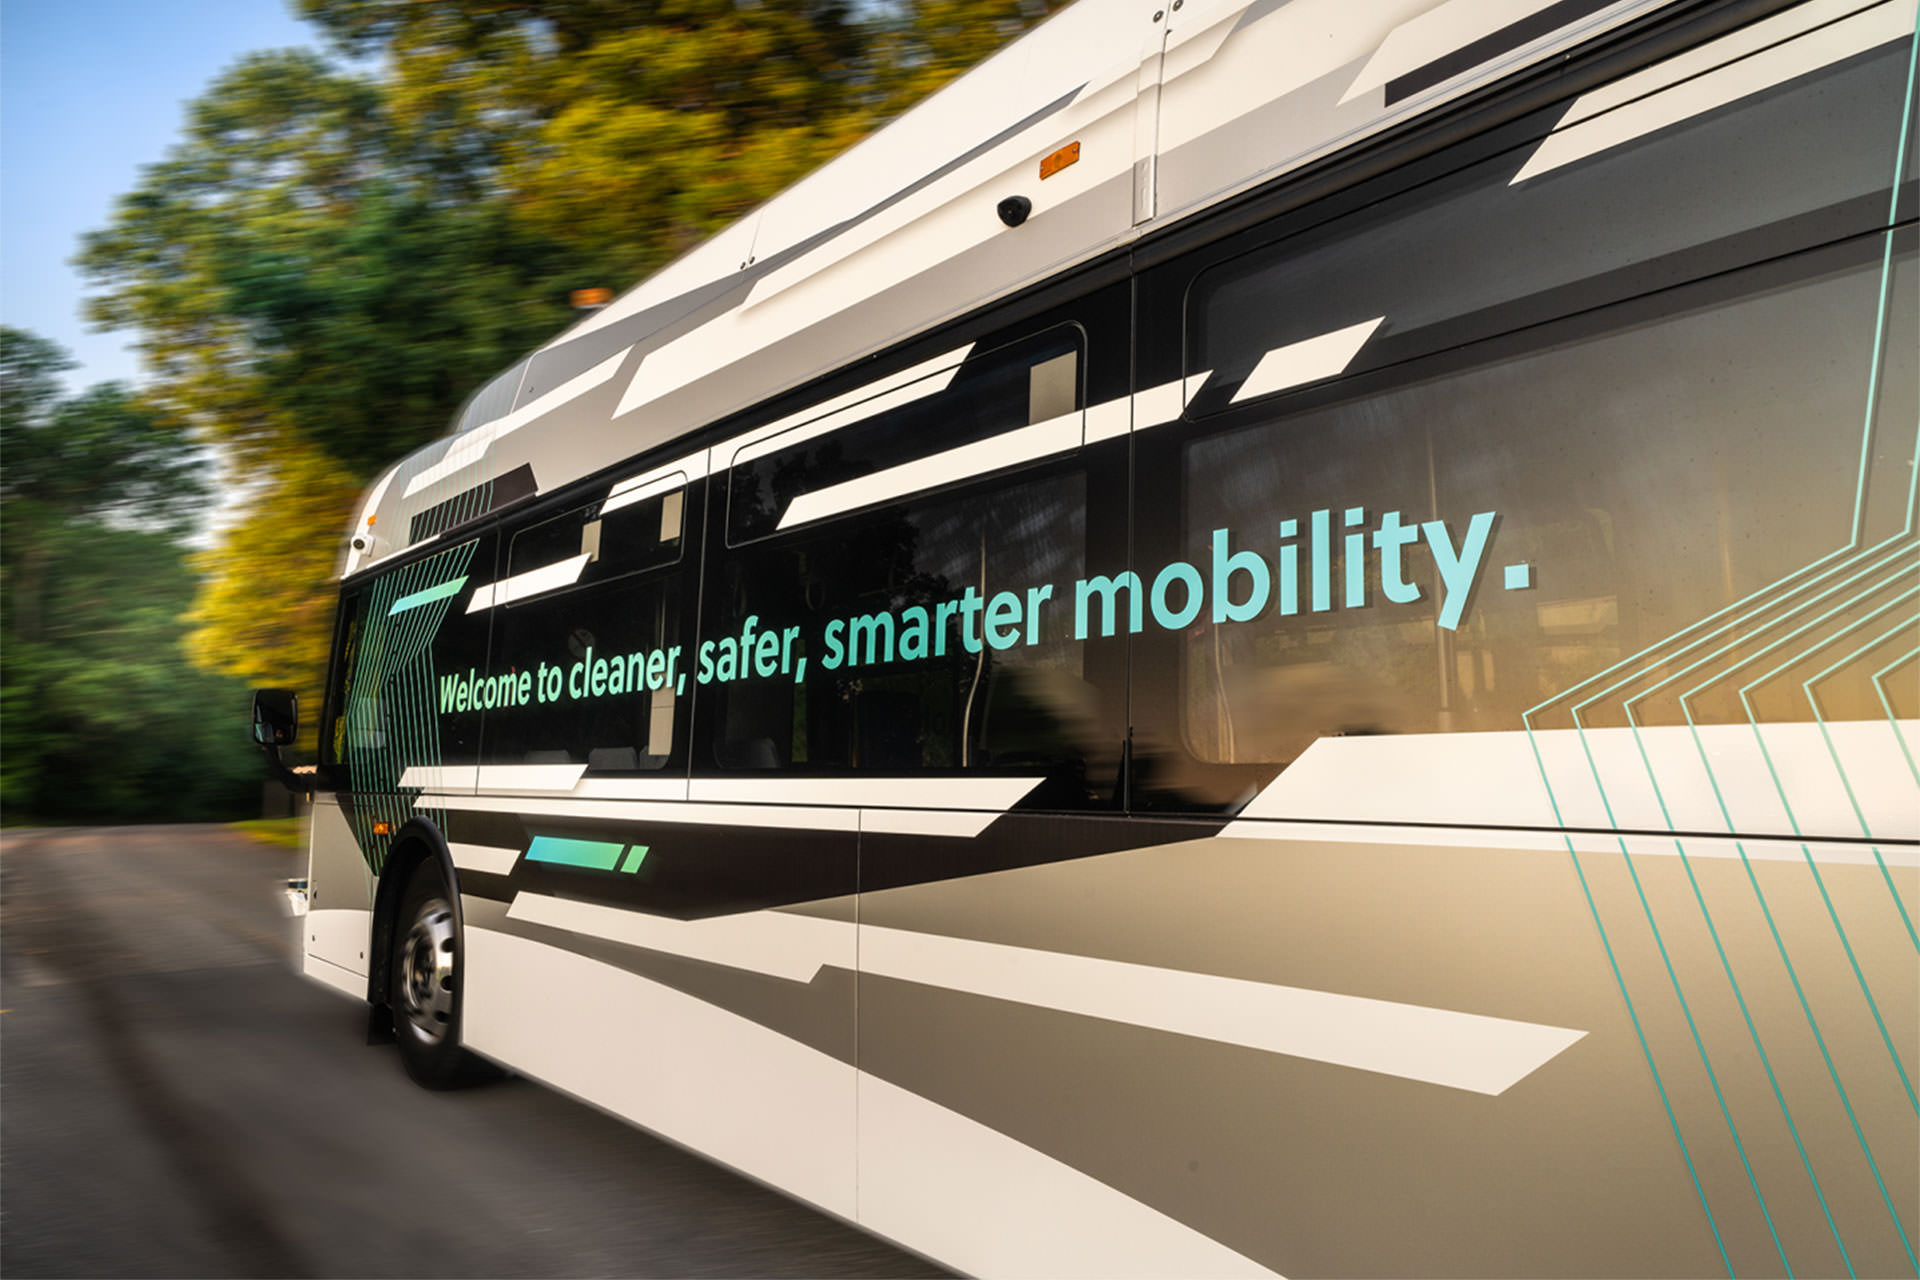 نمای عقب اتوبوس خودران نیو فلایر / Xcelsior AV Level 4 autonomous transit bus در جاده